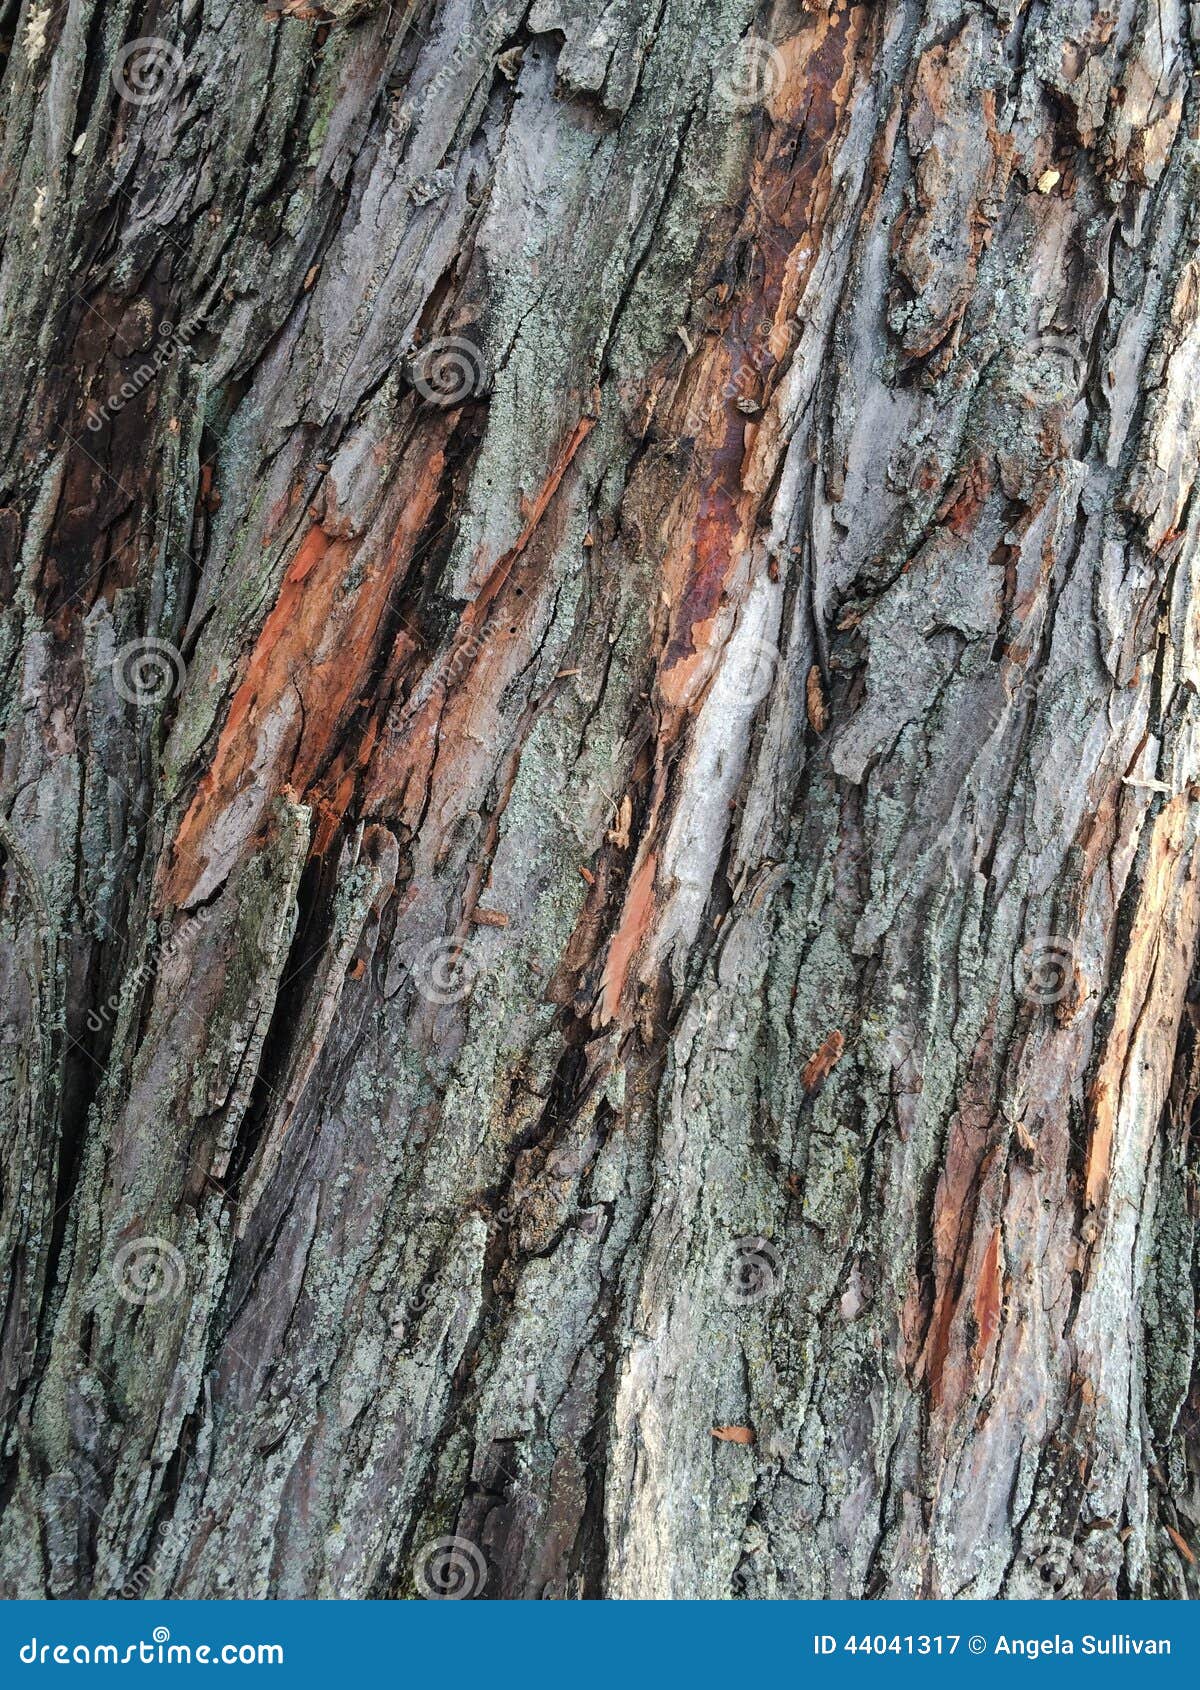 Maple Tree Shedding Bark Shefalitayal